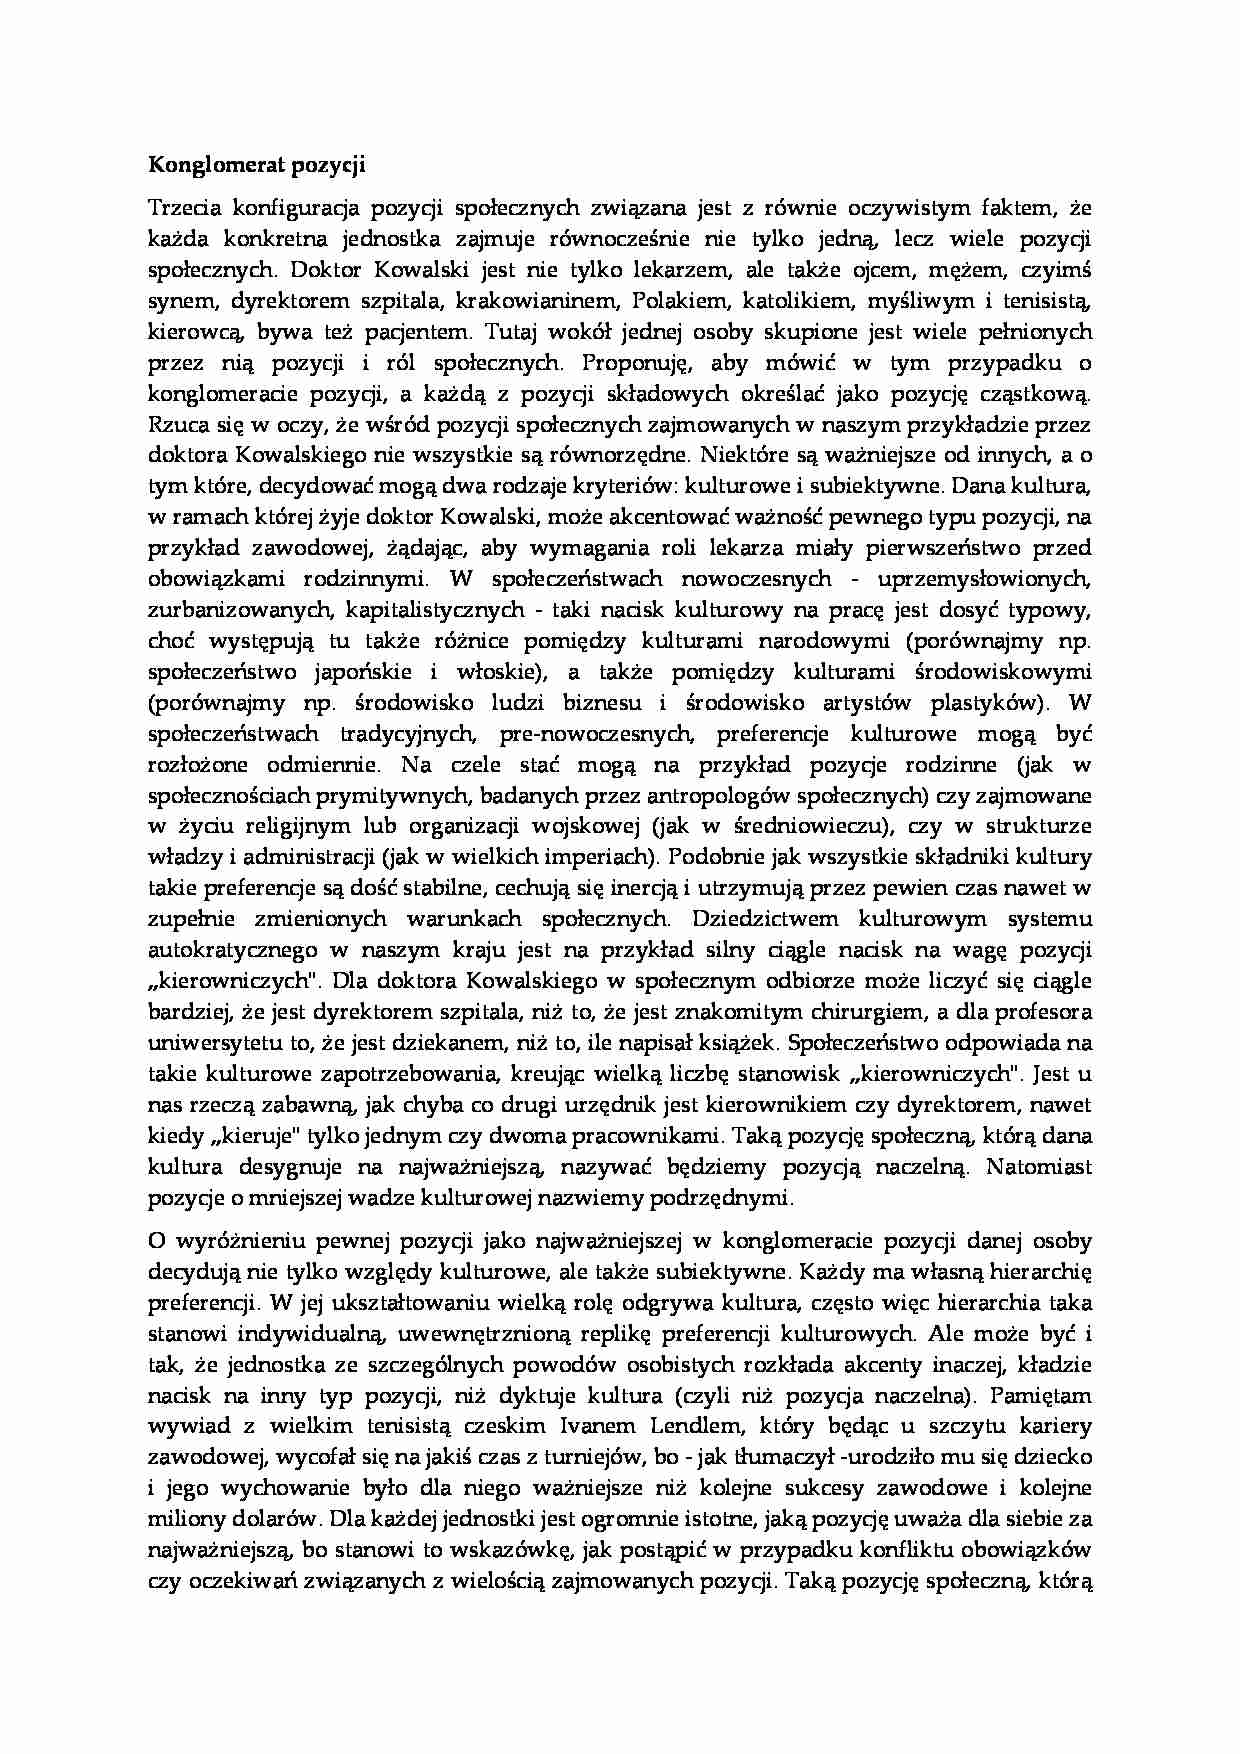 Konglomerat  pozycji - socjologia - strona 1